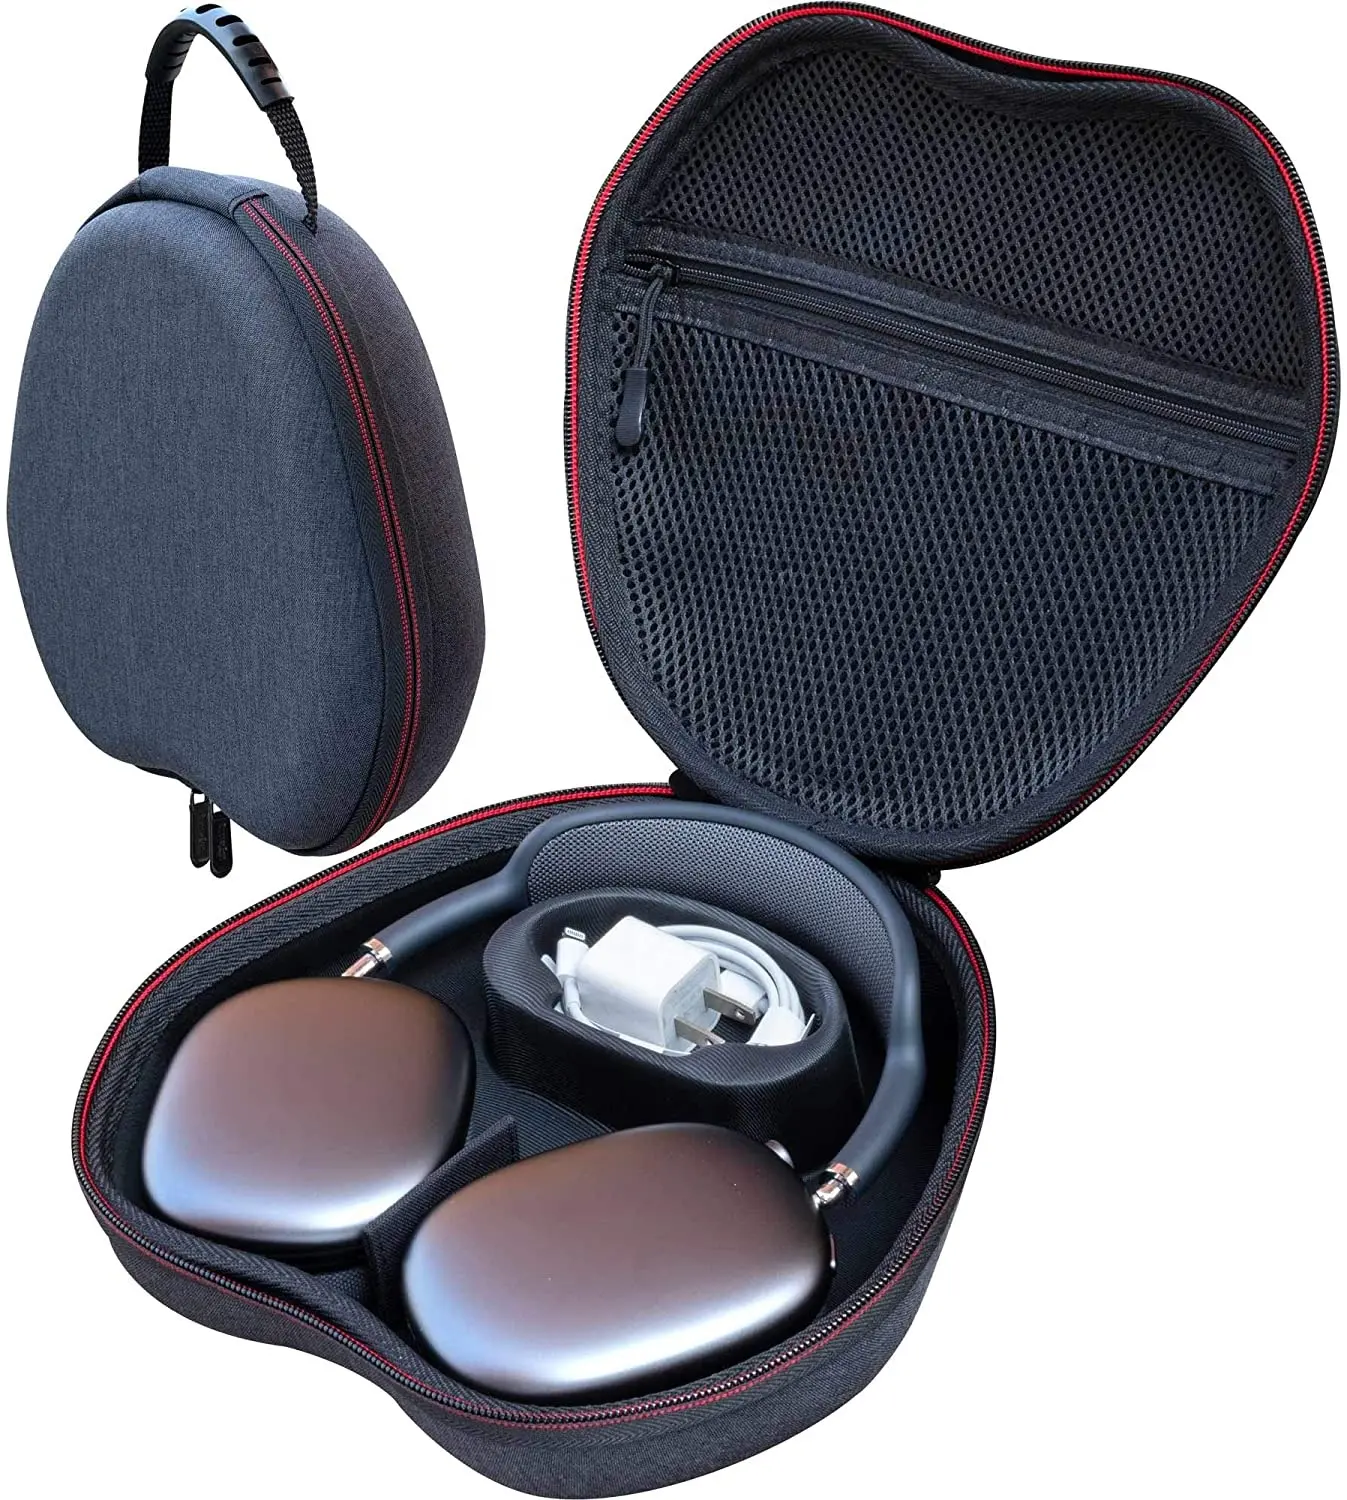 Capa de fone de ouvido com zíper rígido moldado em EVA multifuncional personalizada, proteção à prova de choque para modelos Apx Max